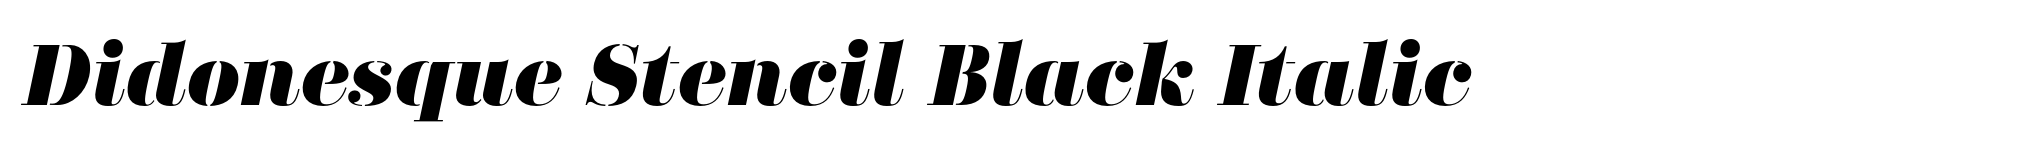 Didonesque Stencil Black Italic image